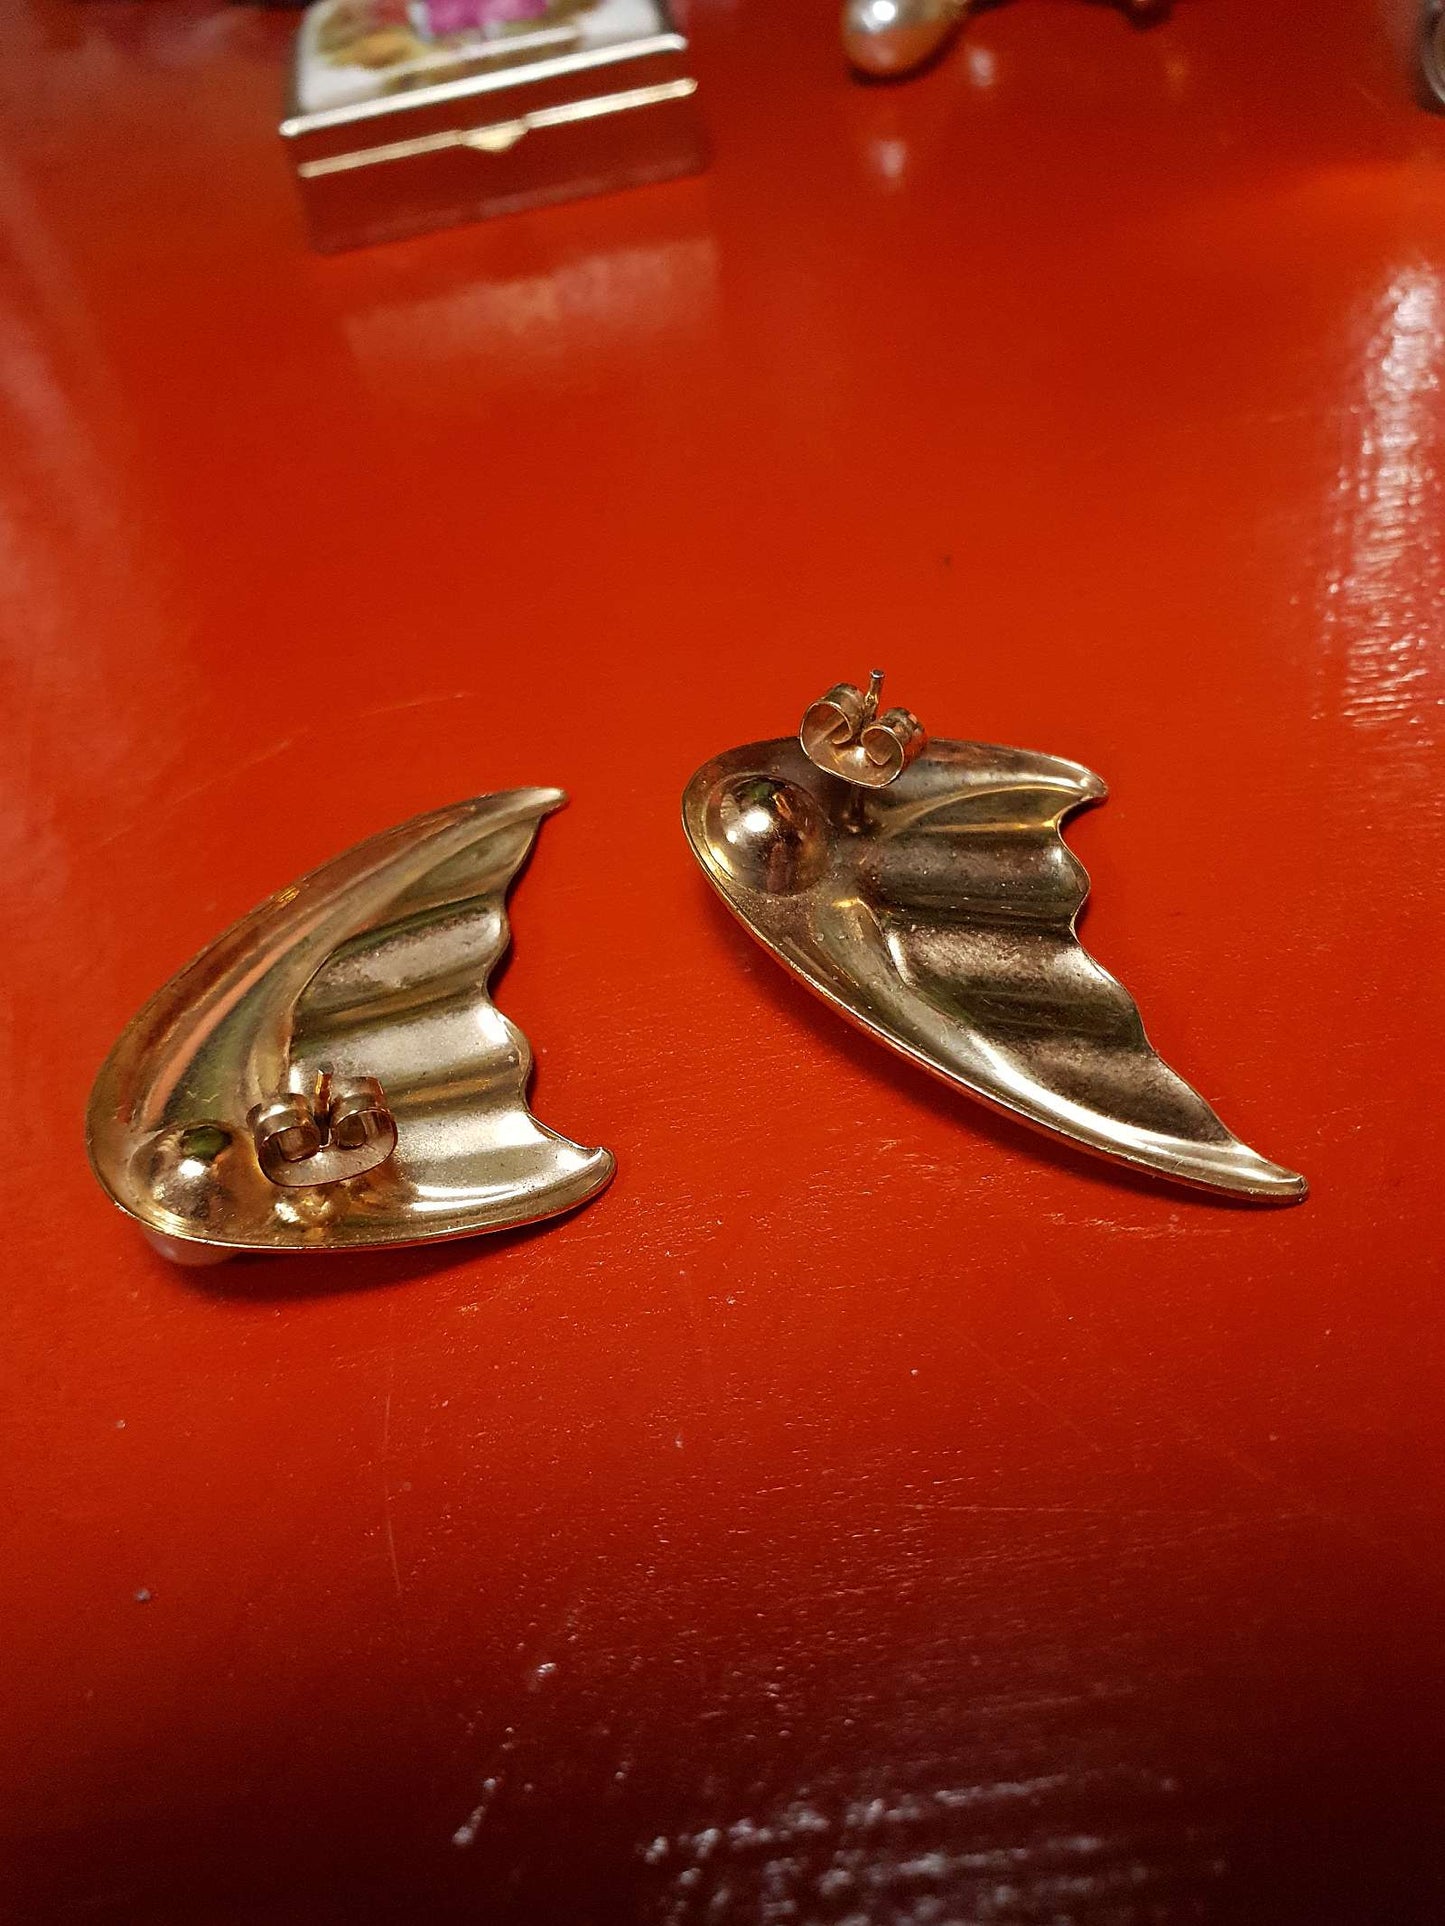 Vintage 1960s Faux Pearl Earrings Retro Gold Tone Black Wavy Wings